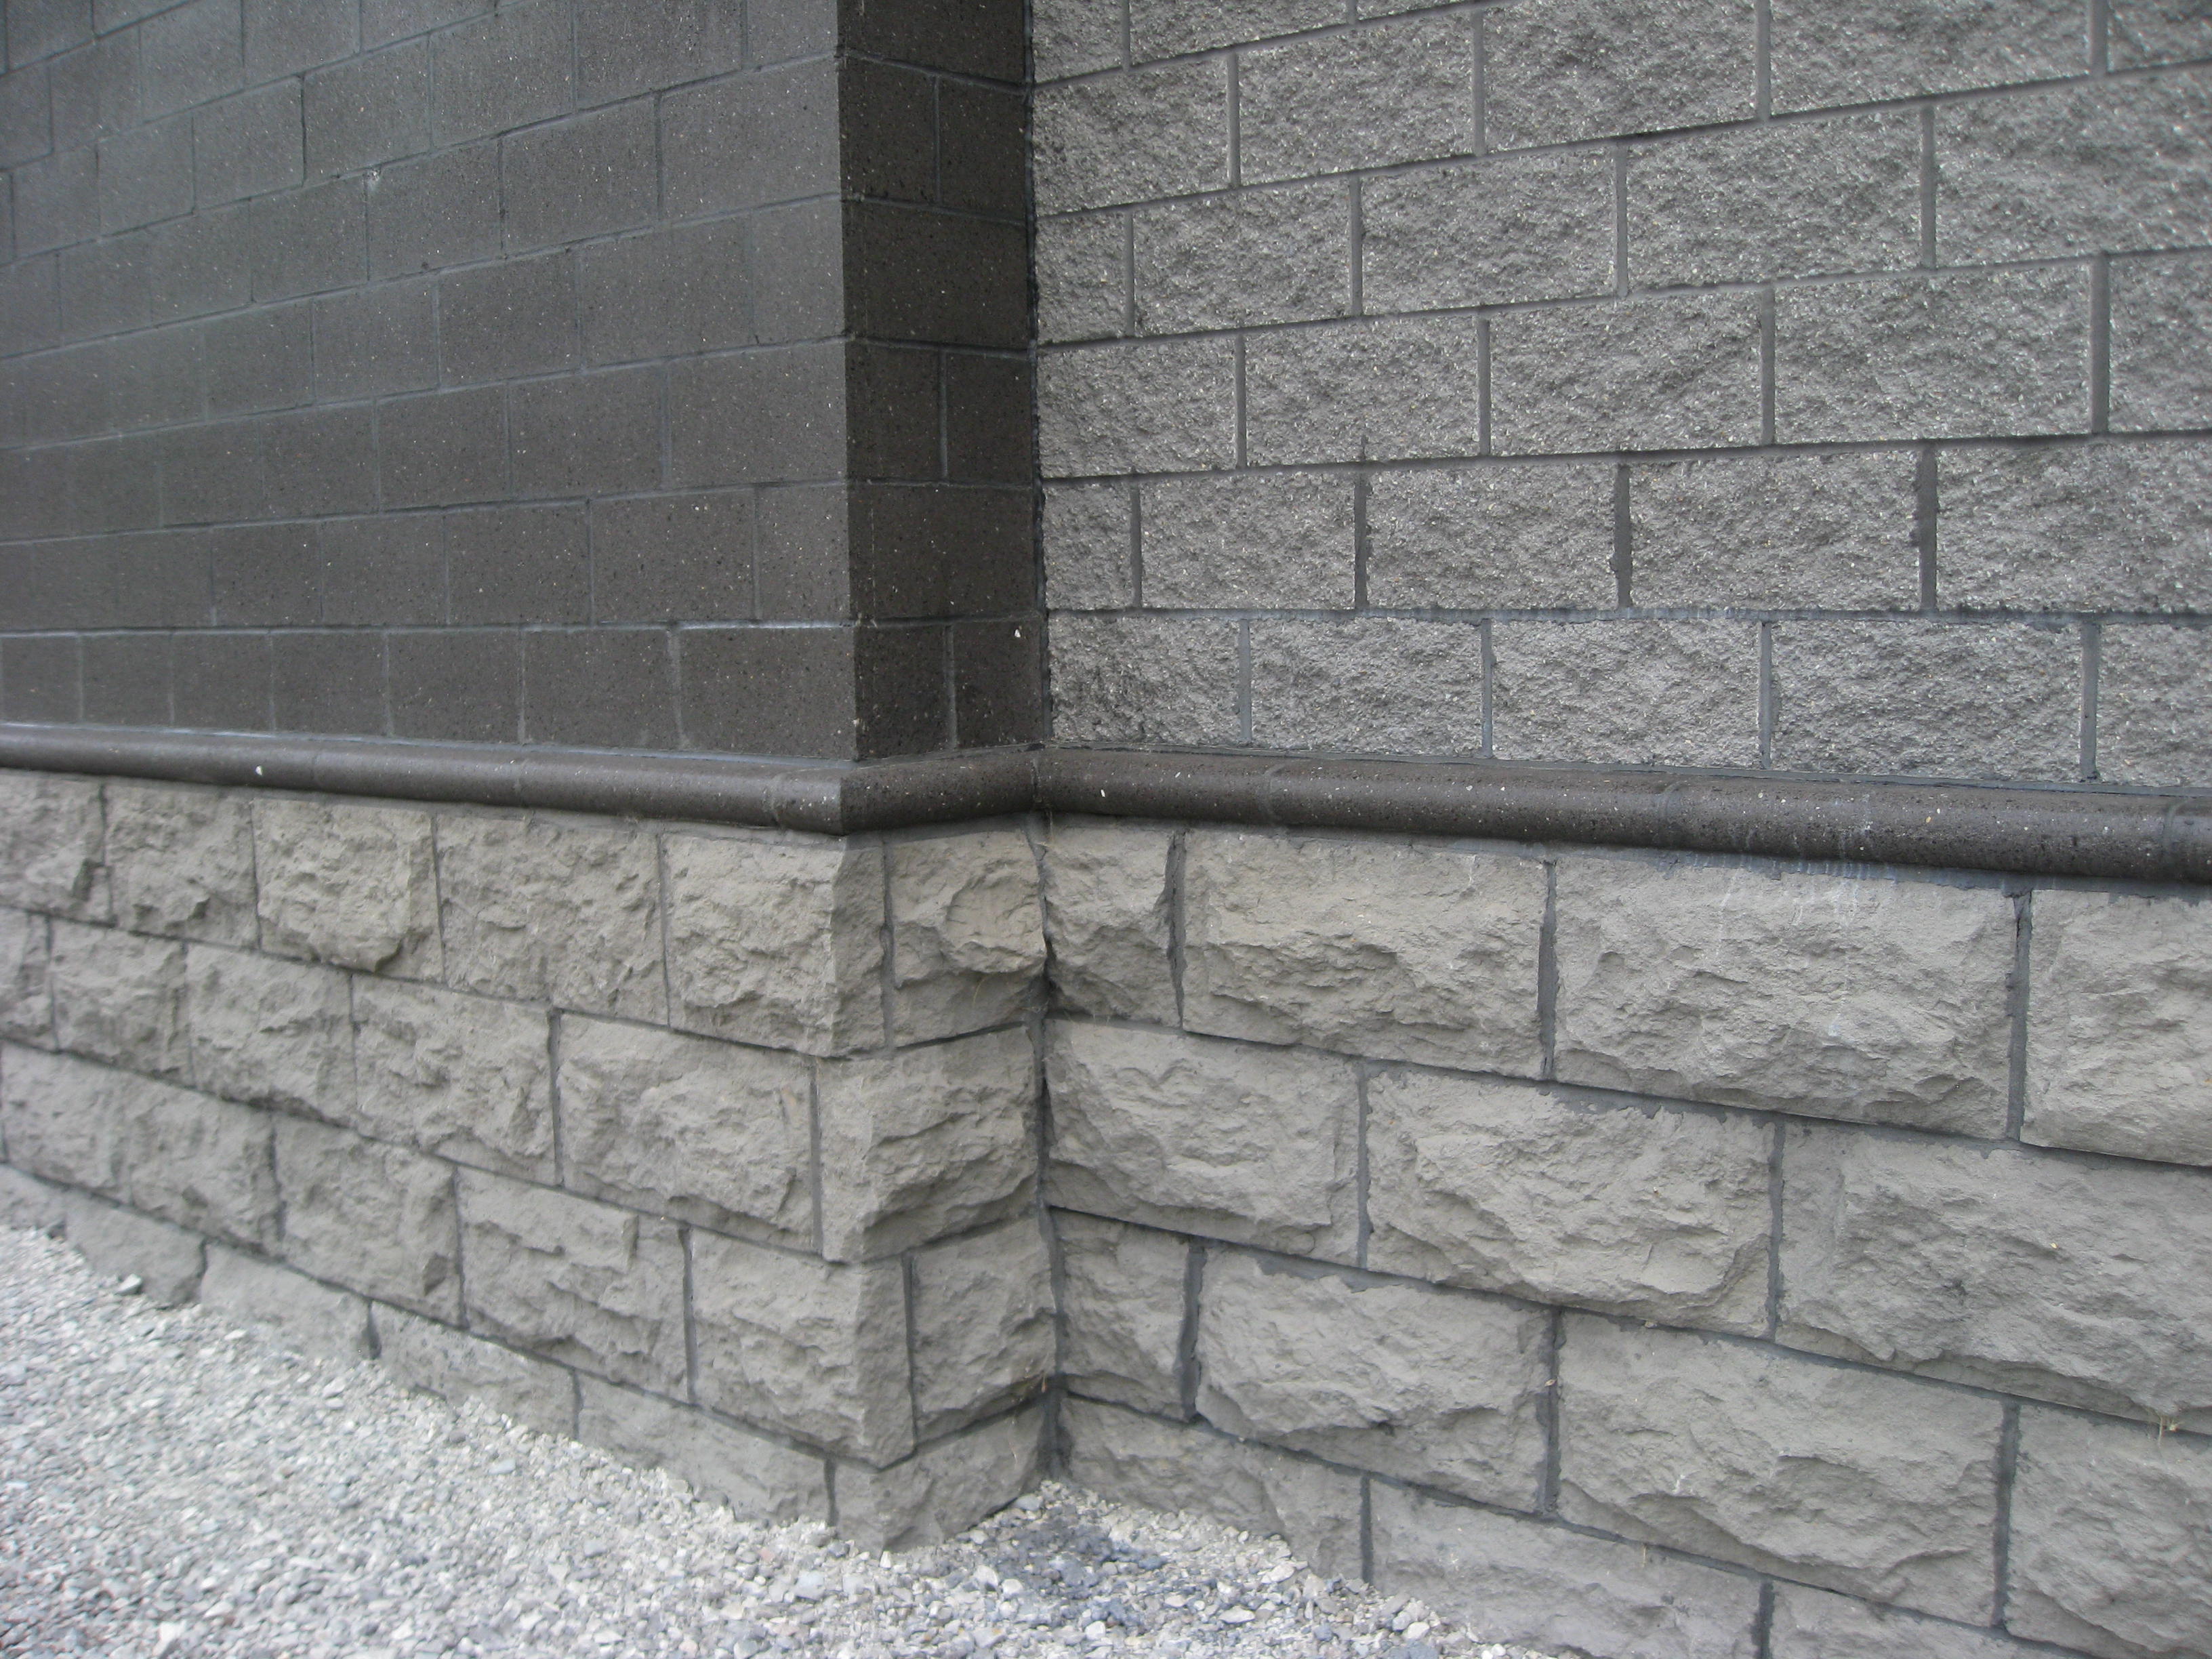 Concrete Flatwork